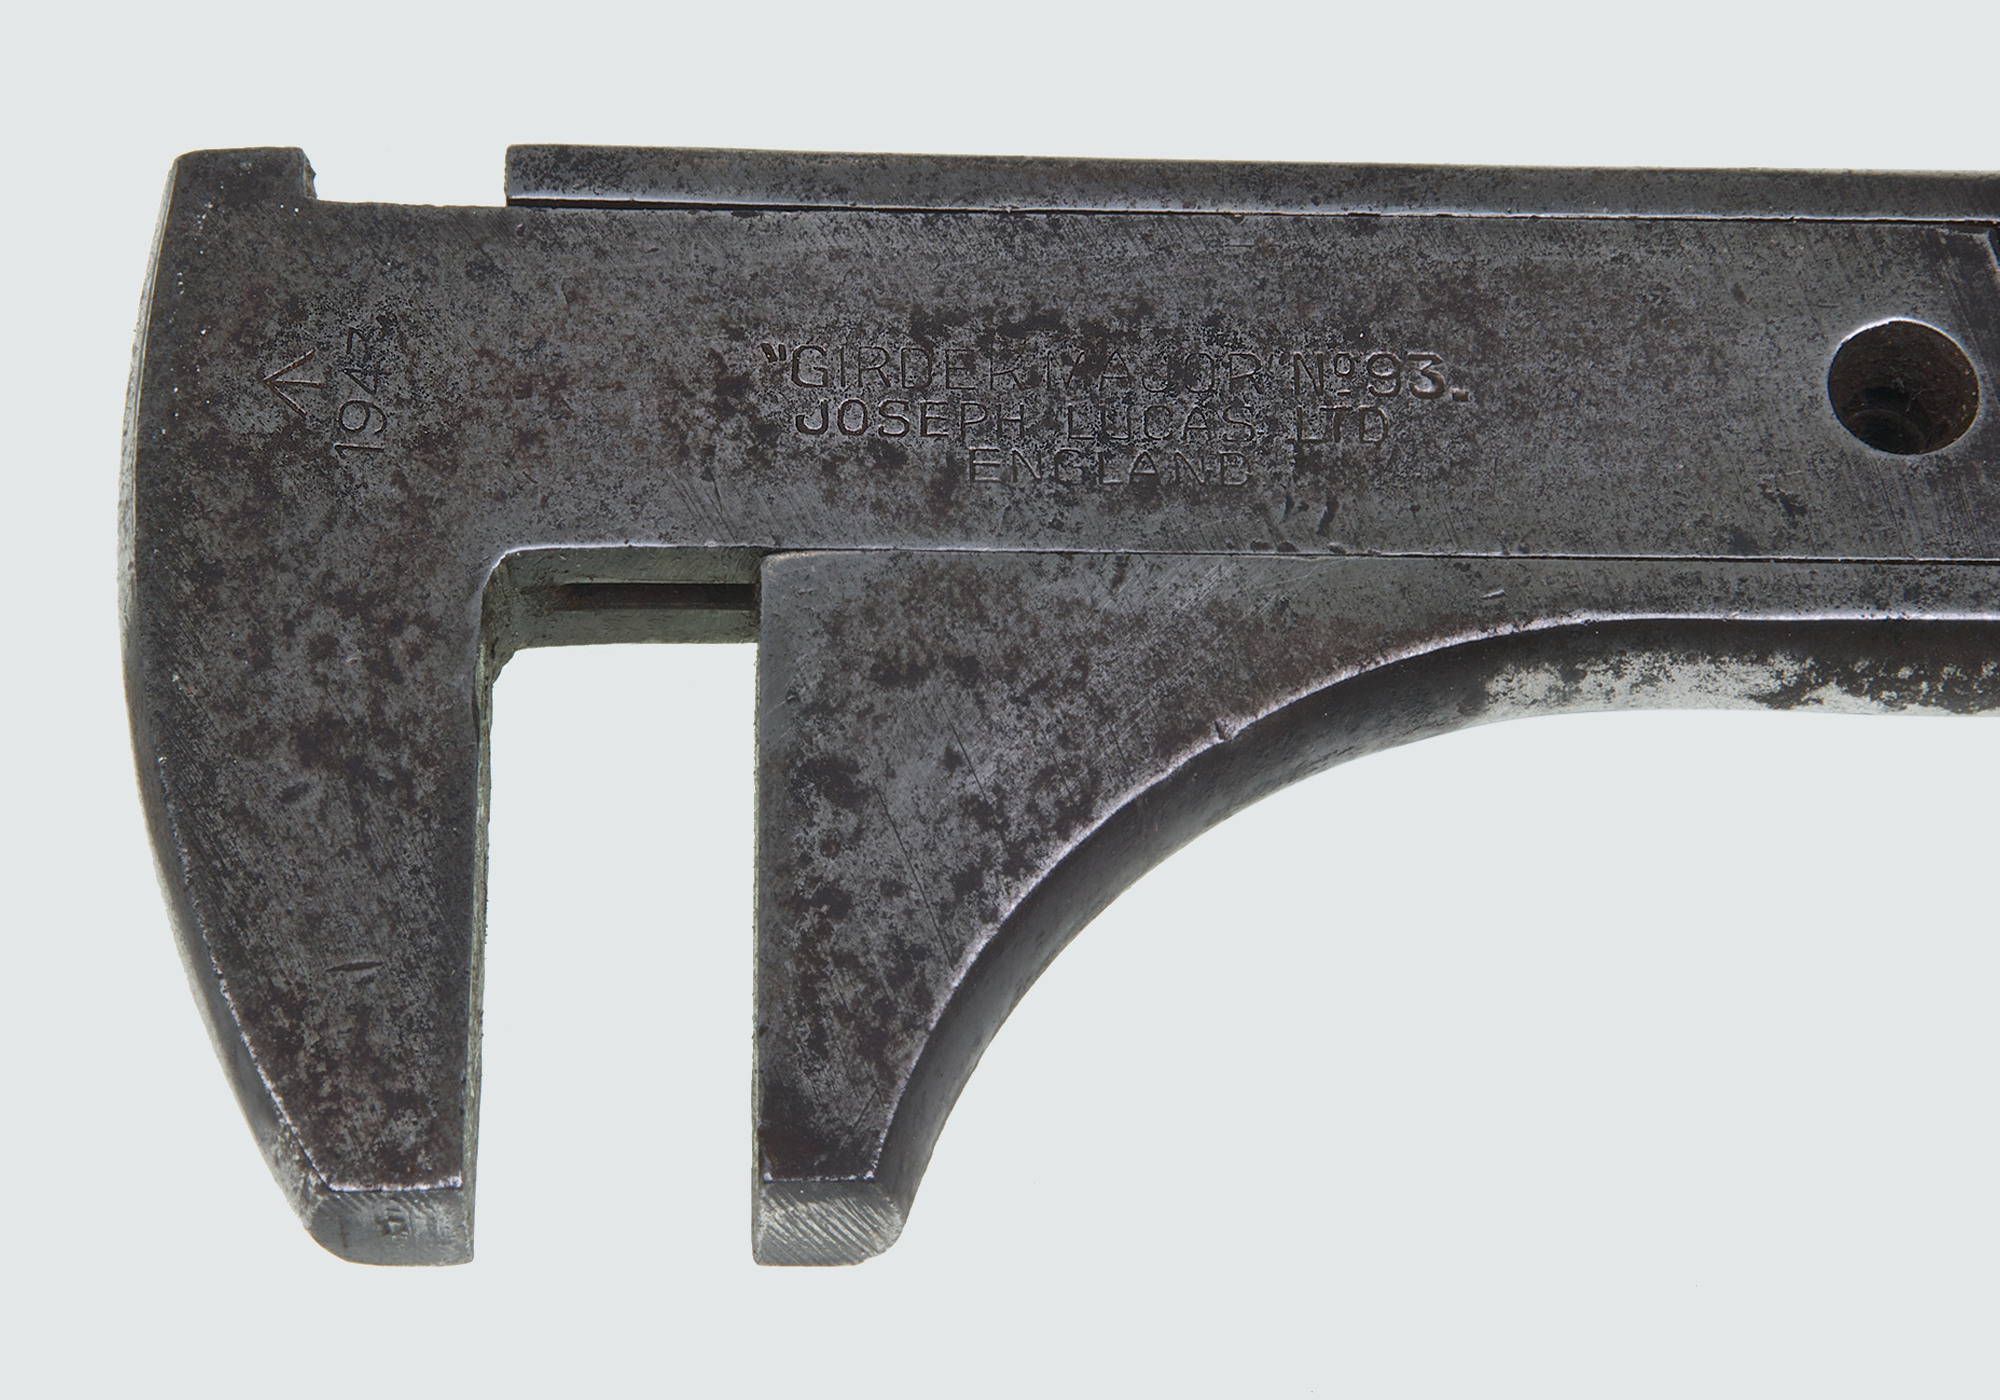 Girder Major 93 WWII Wrench